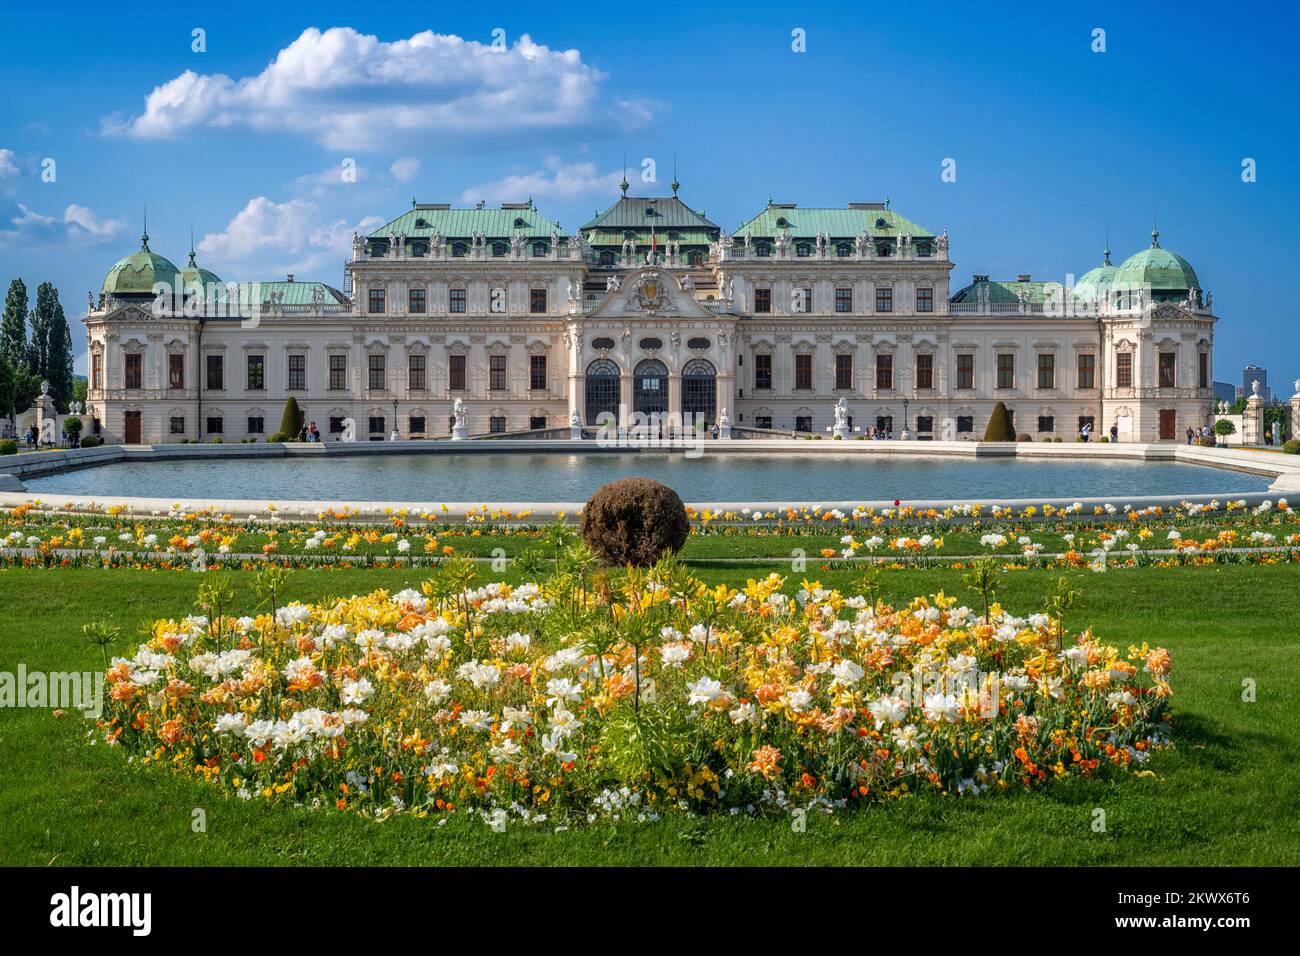 Gärten des Schlosses Belvedere und Museum, Wien, Österreich. Die barocken Gärten des Belvedere gehören zu den schönsten der Welt Stockfoto